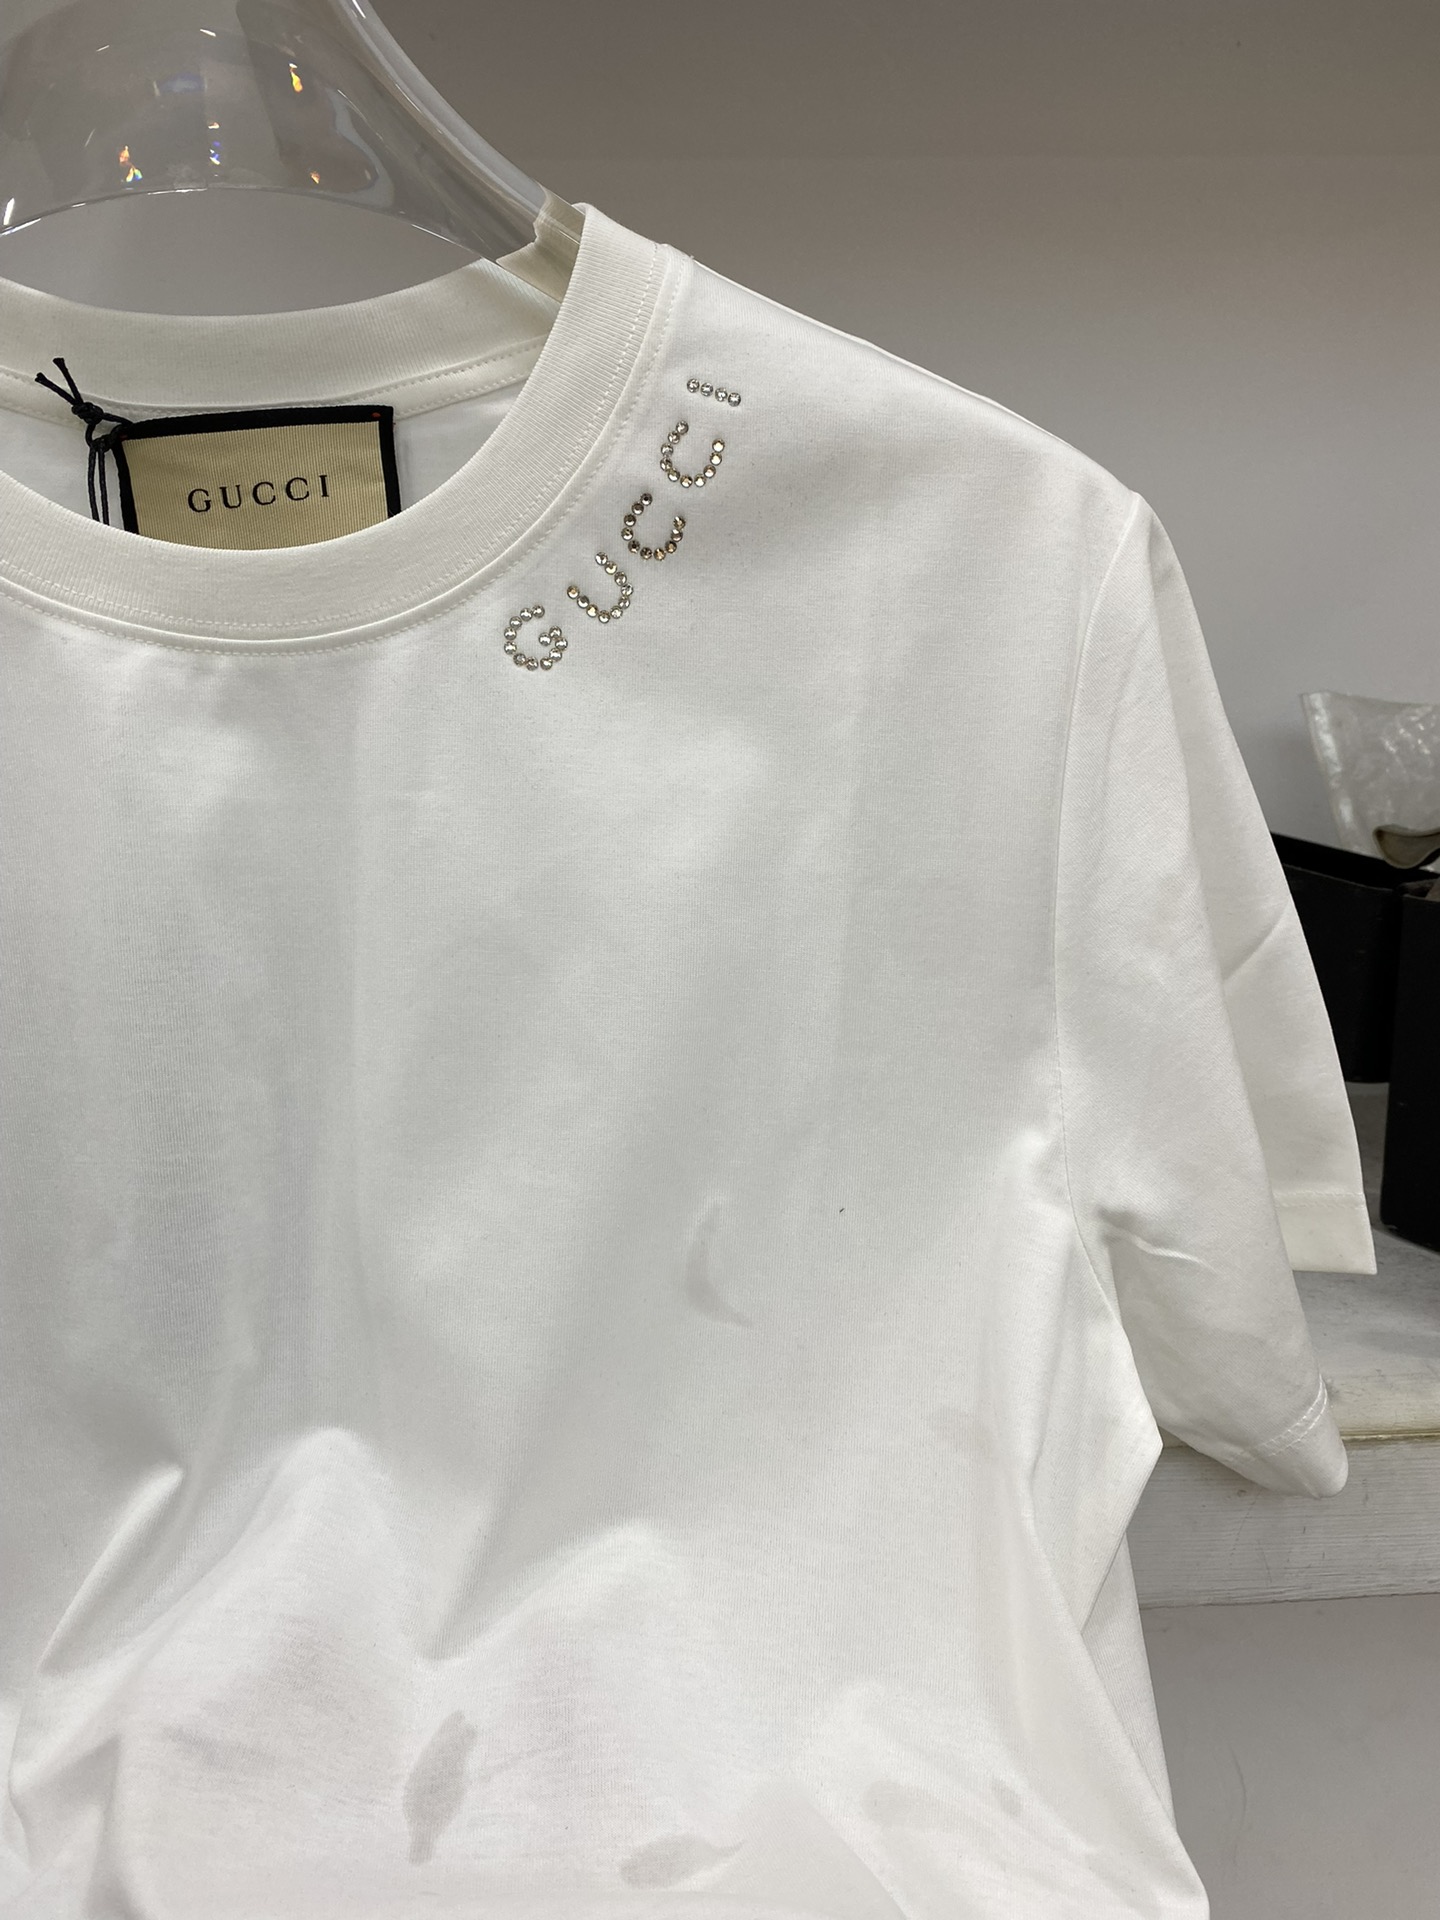 GUGCI古倚2️4️专柜原单最新款春夏新款早春男士品牌标识圆领棉质短袖T恤胸前点缀同色系品牌字母标识️